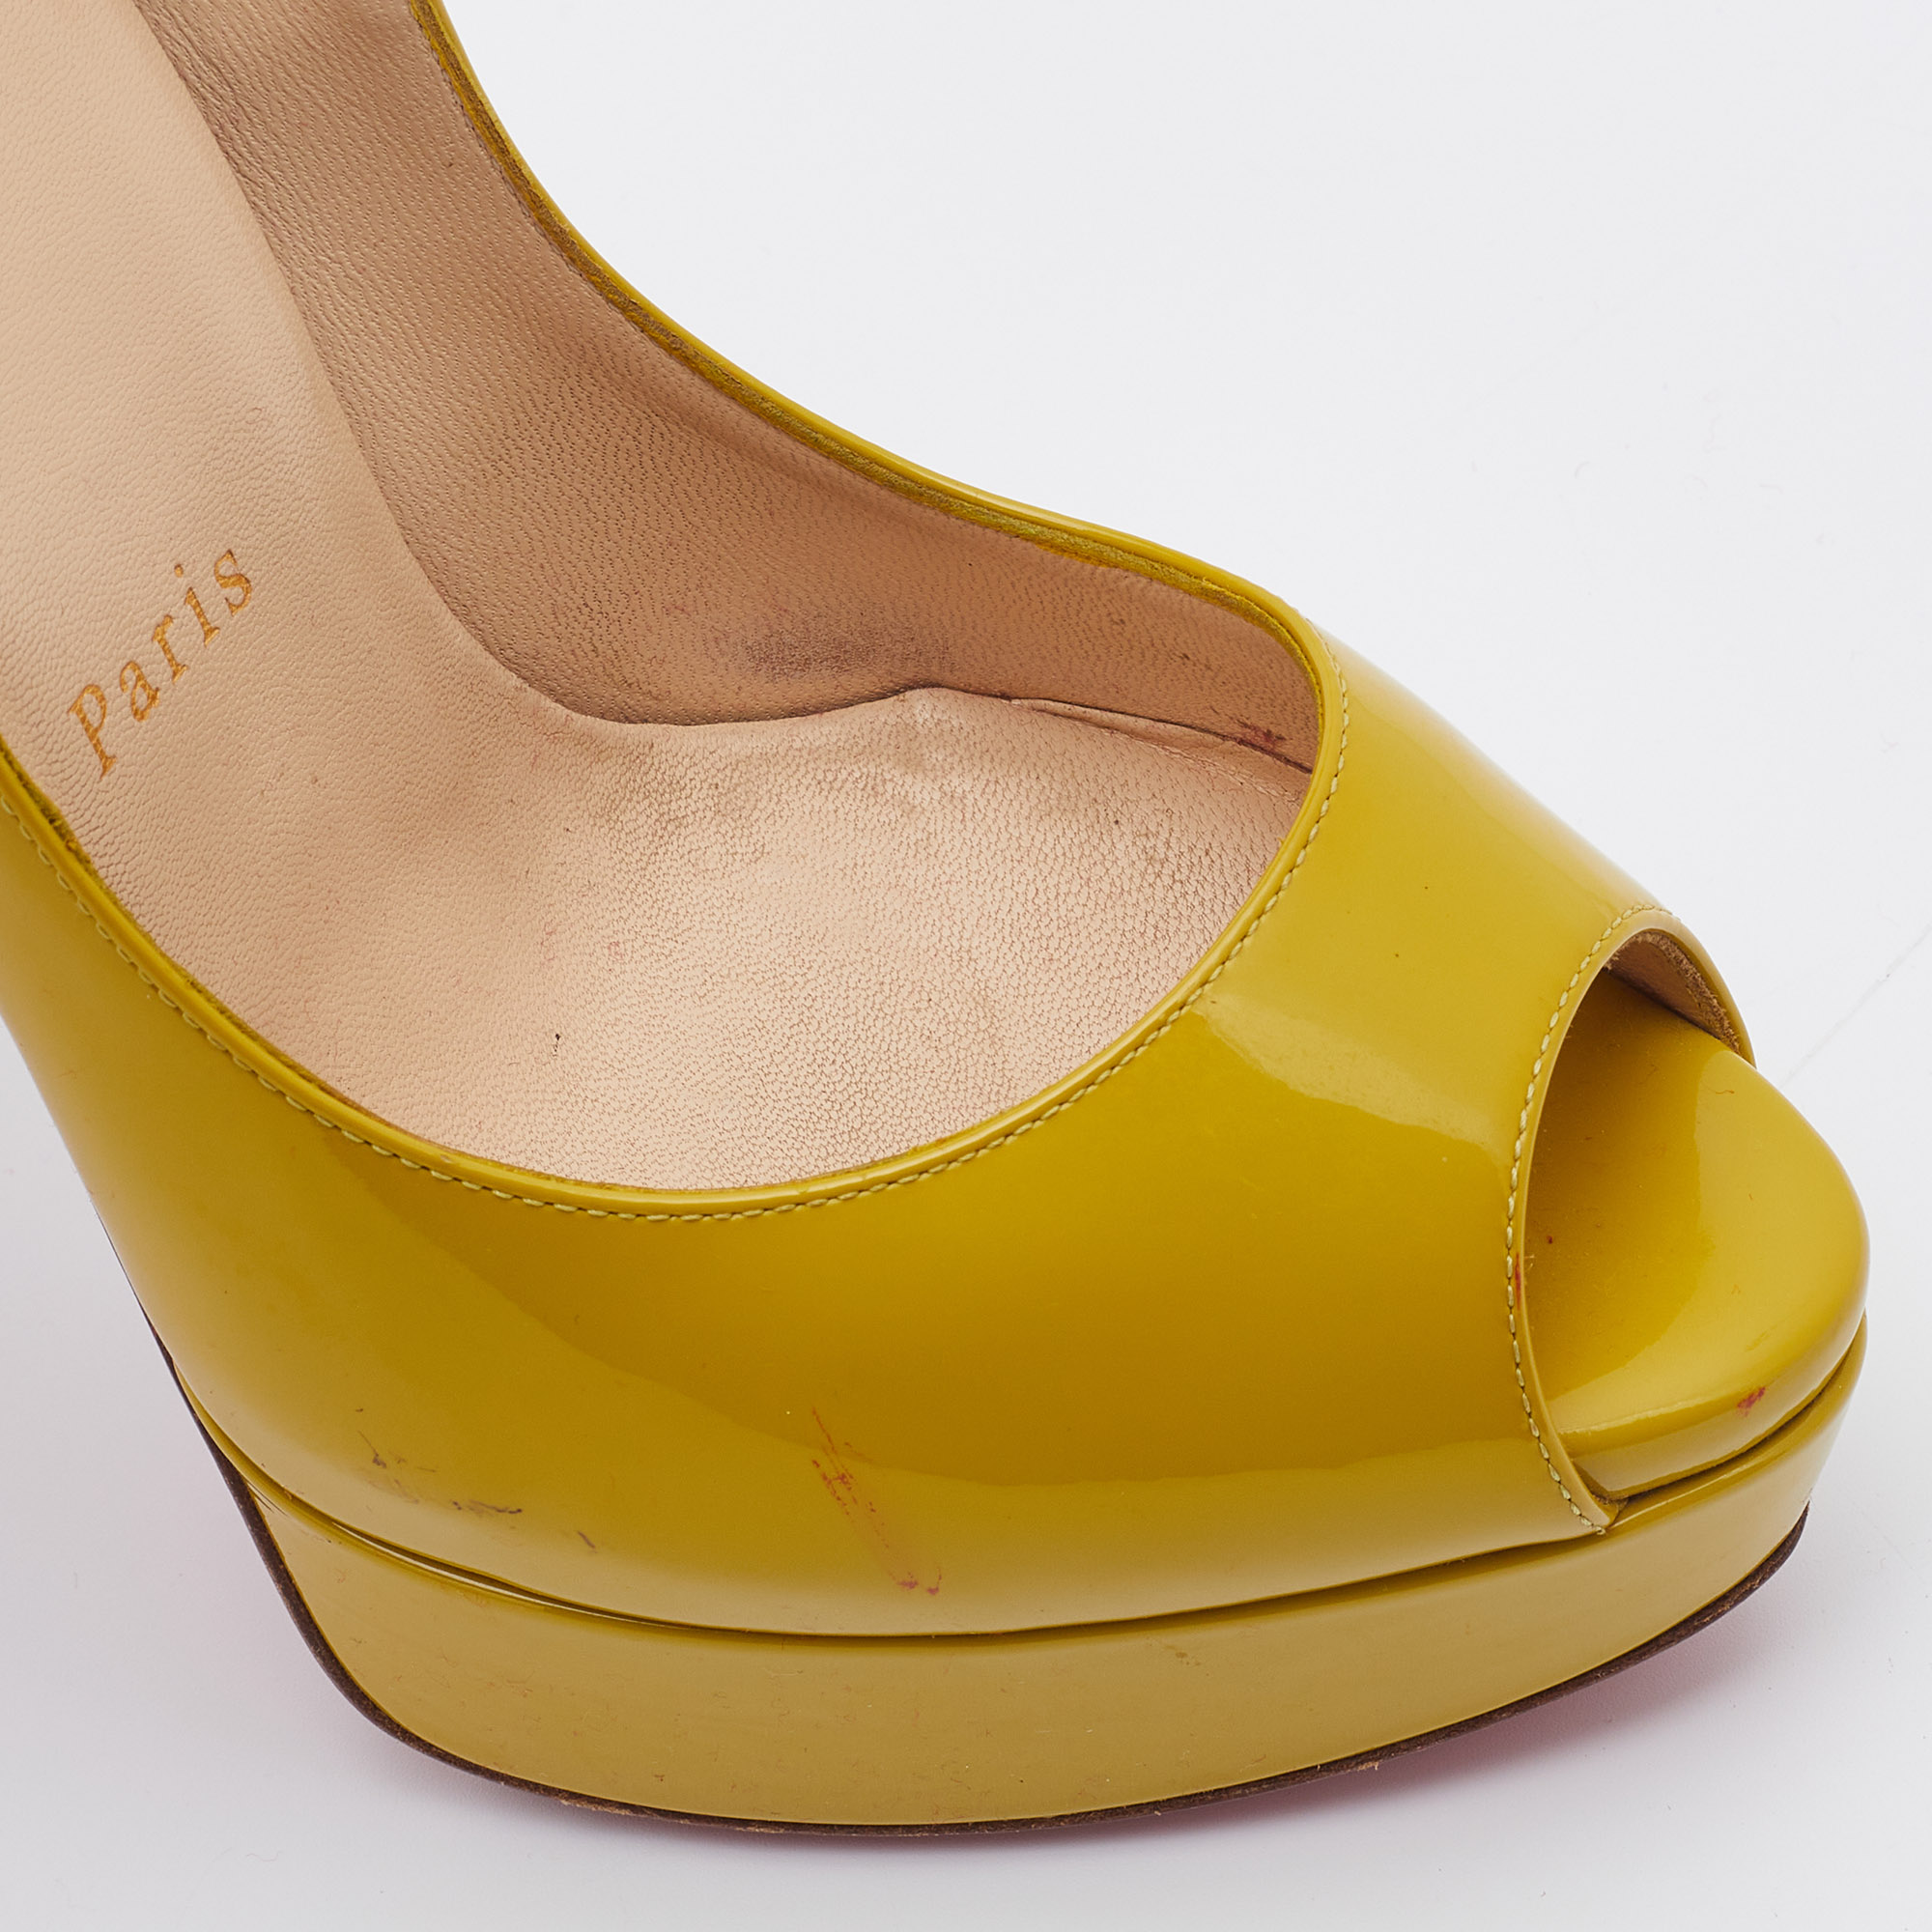 Christian Louboutin Mustard Patent Leather Lady Peep Toe Pumps Size 36